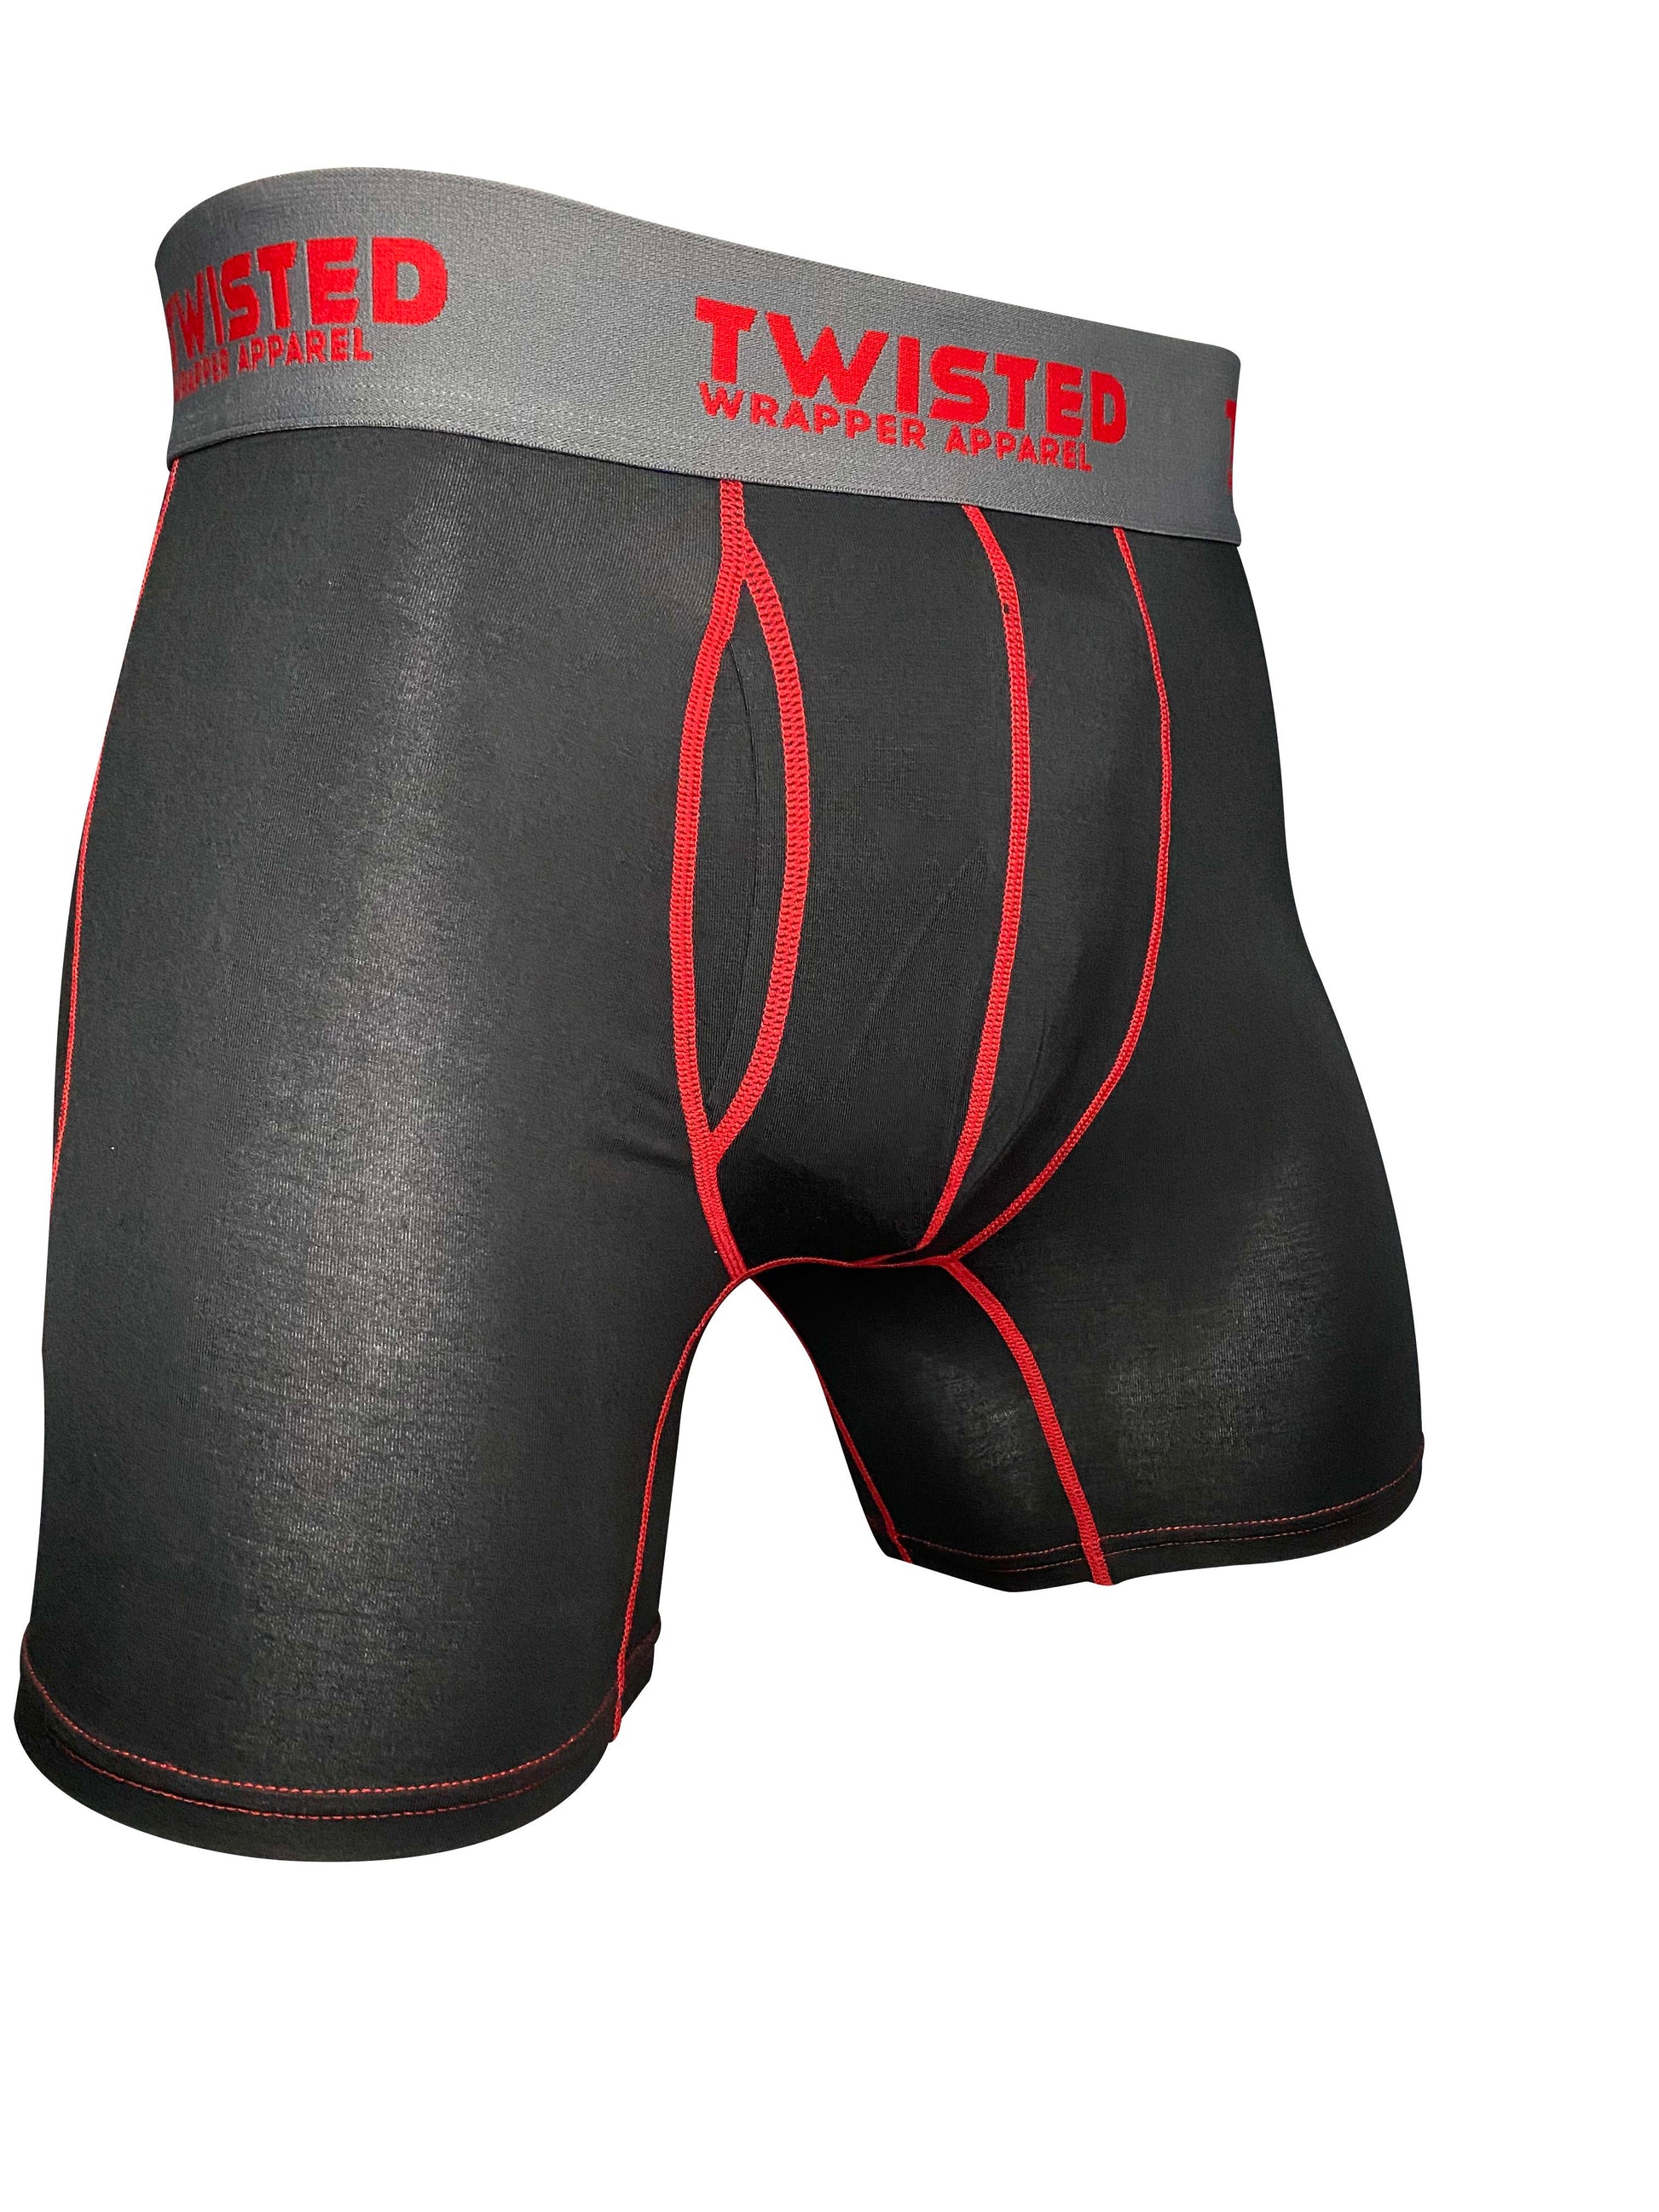 Premium Underwear - TwistedWrapper